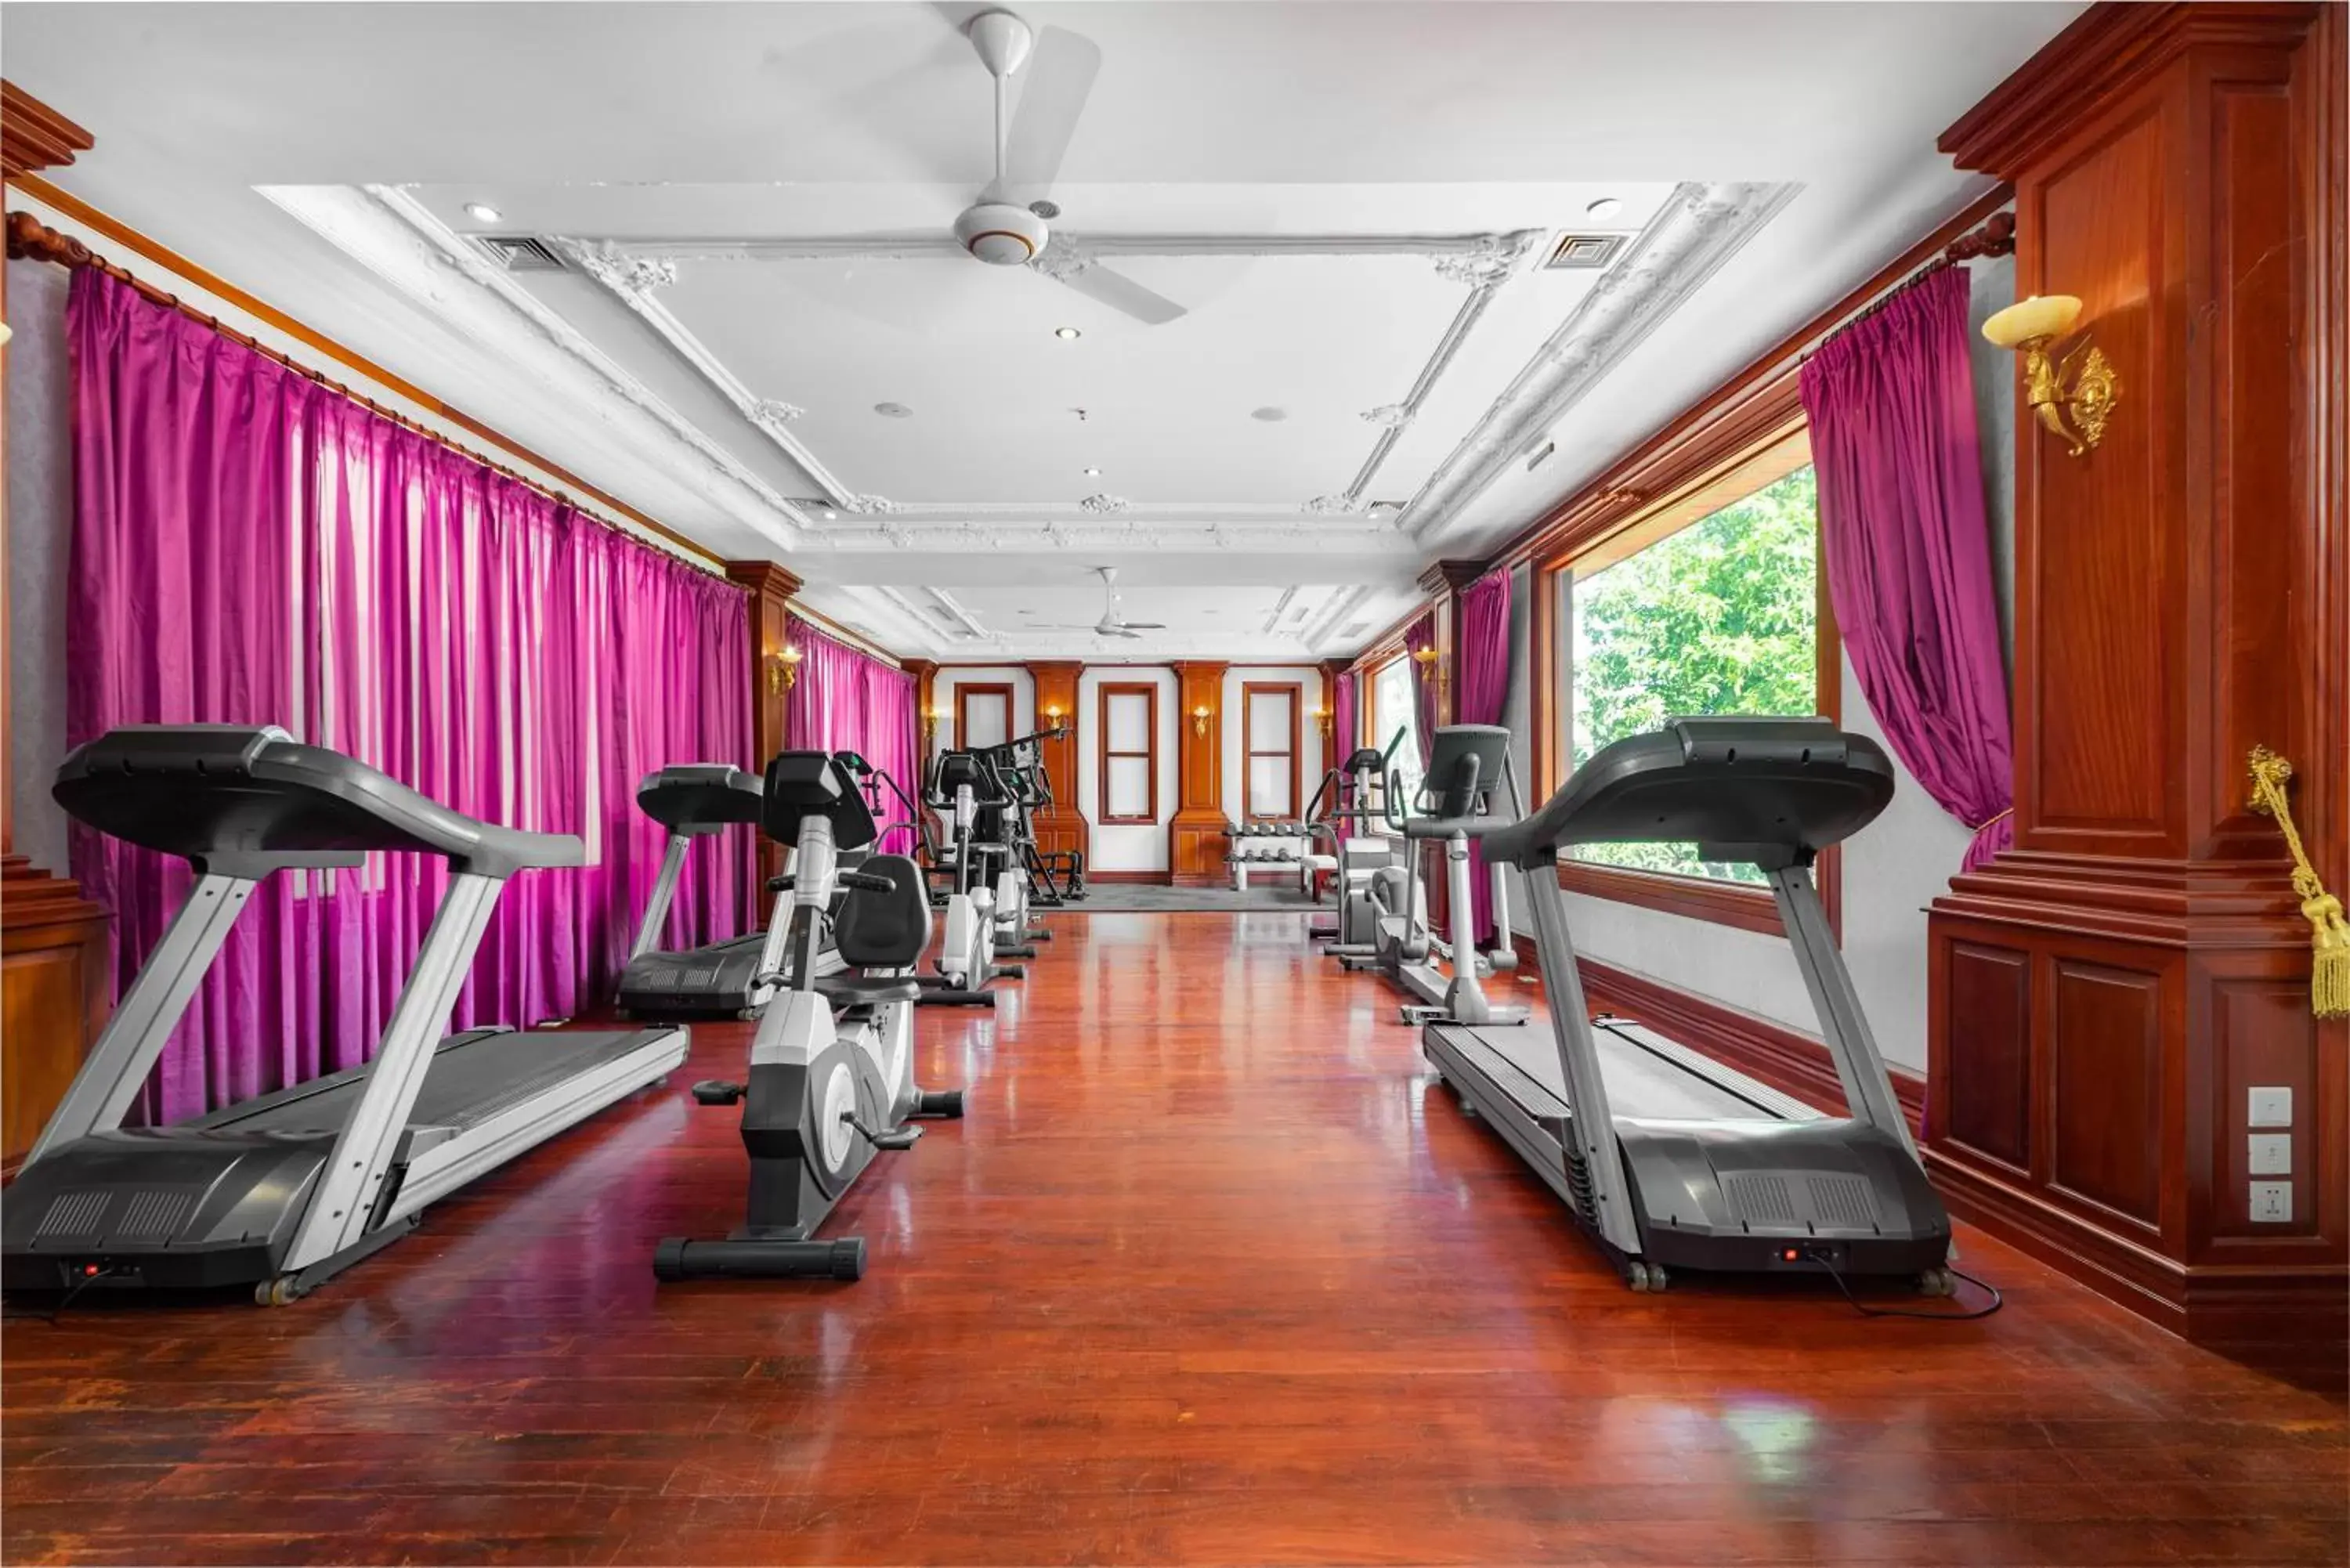 Fitness Center/Facilities in Regency Angkor Hotel